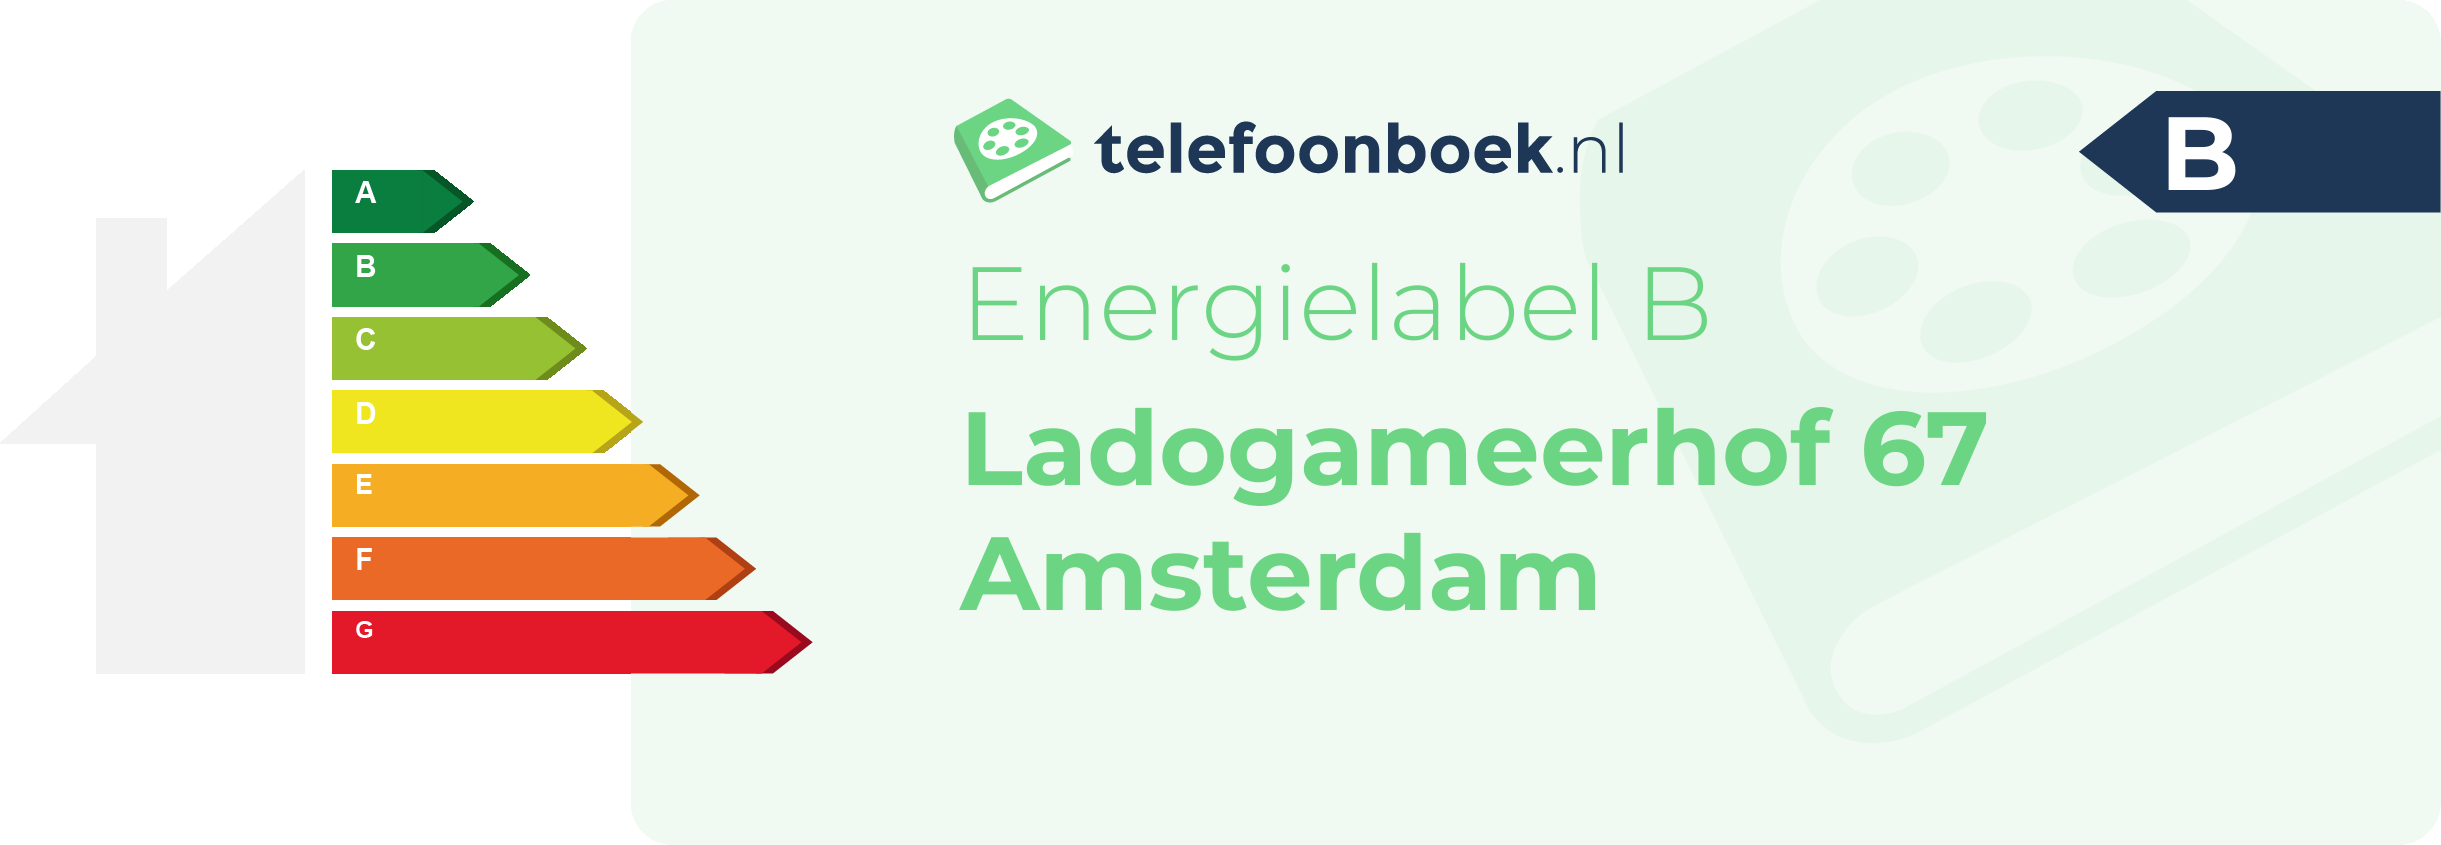 Energielabel Ladogameerhof 67 Amsterdam